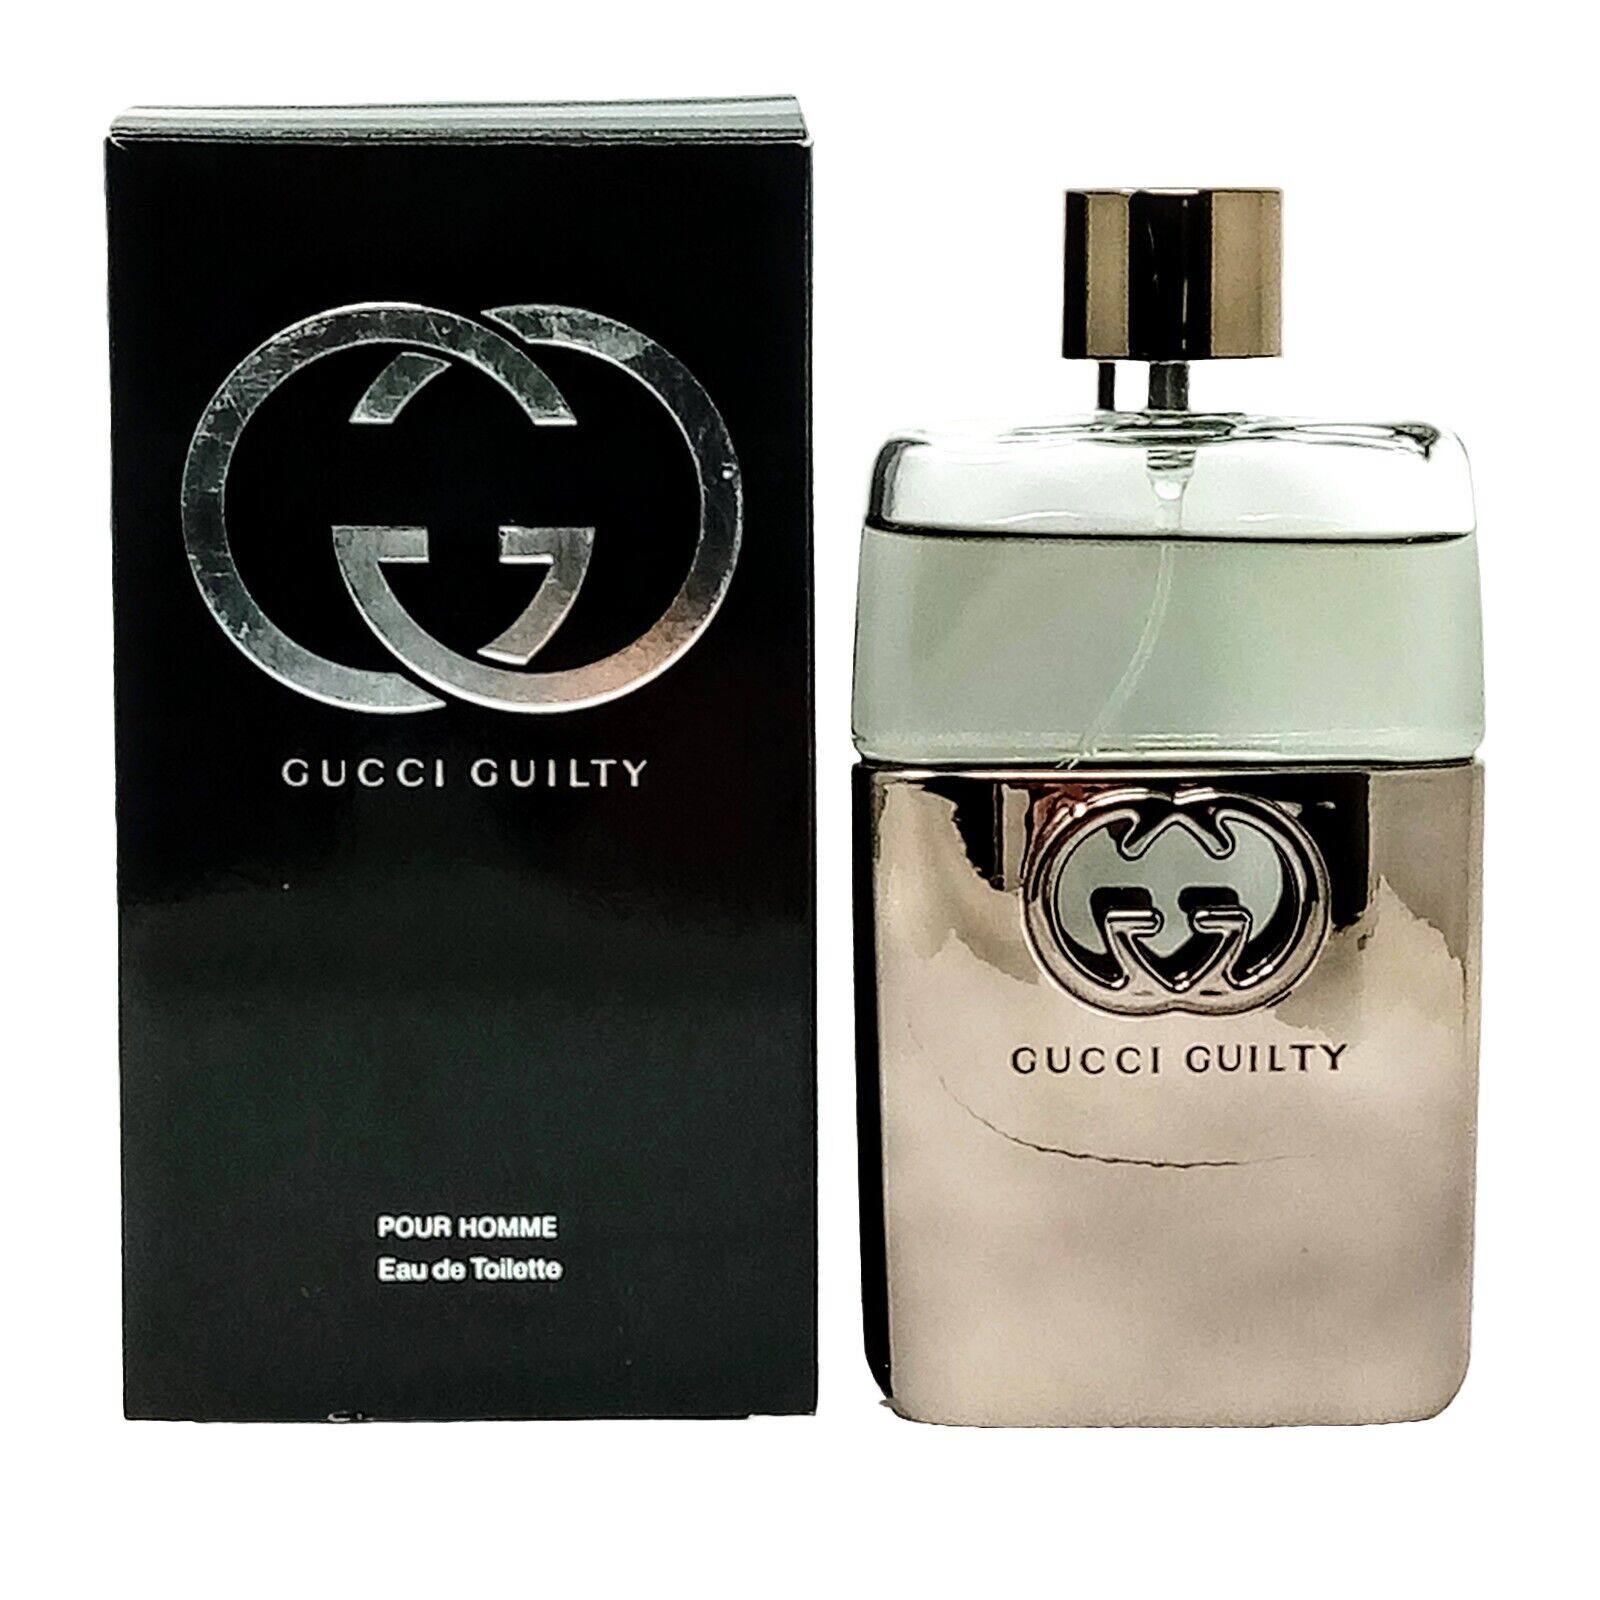 Gucci Guilty for Him - Classic 3oz Eau de Toilette Spray, Brand New